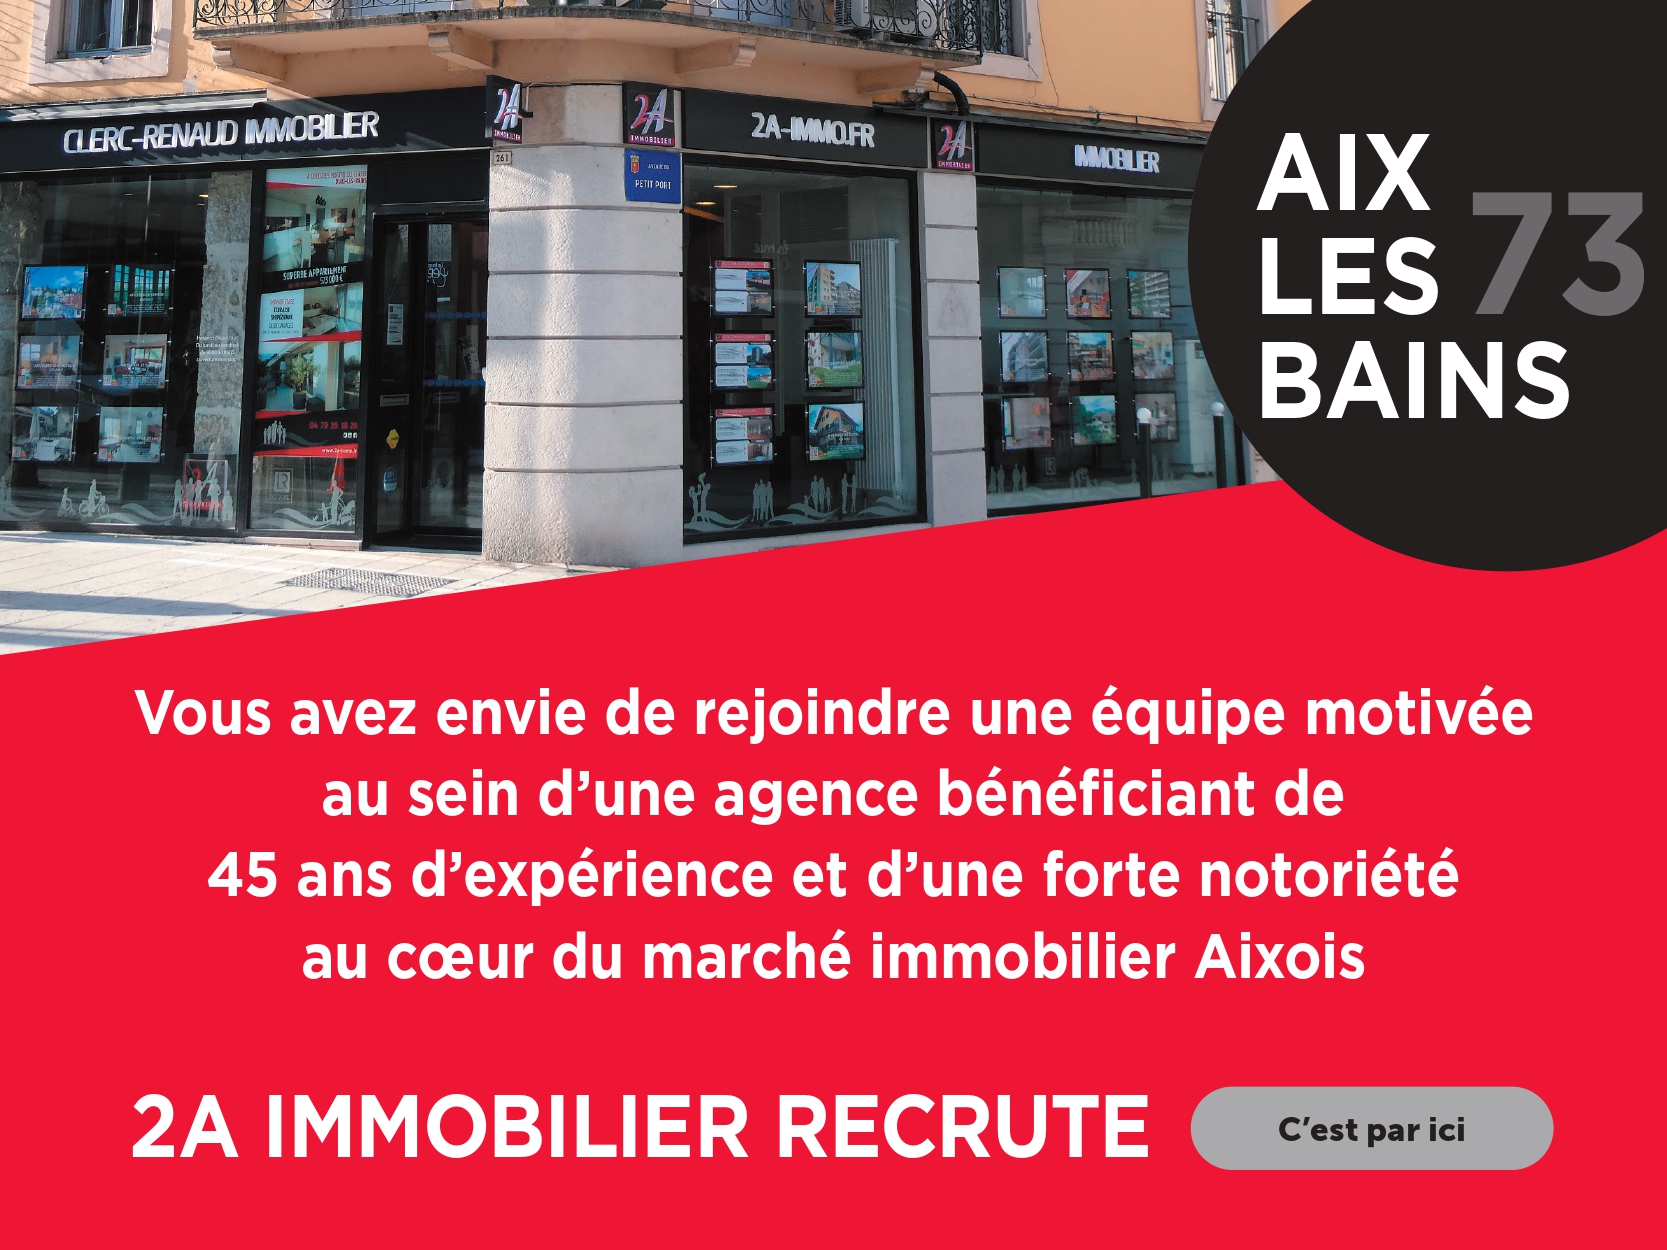 2a immobilier recrute des négociateurs immobilier à Aix-les-bains